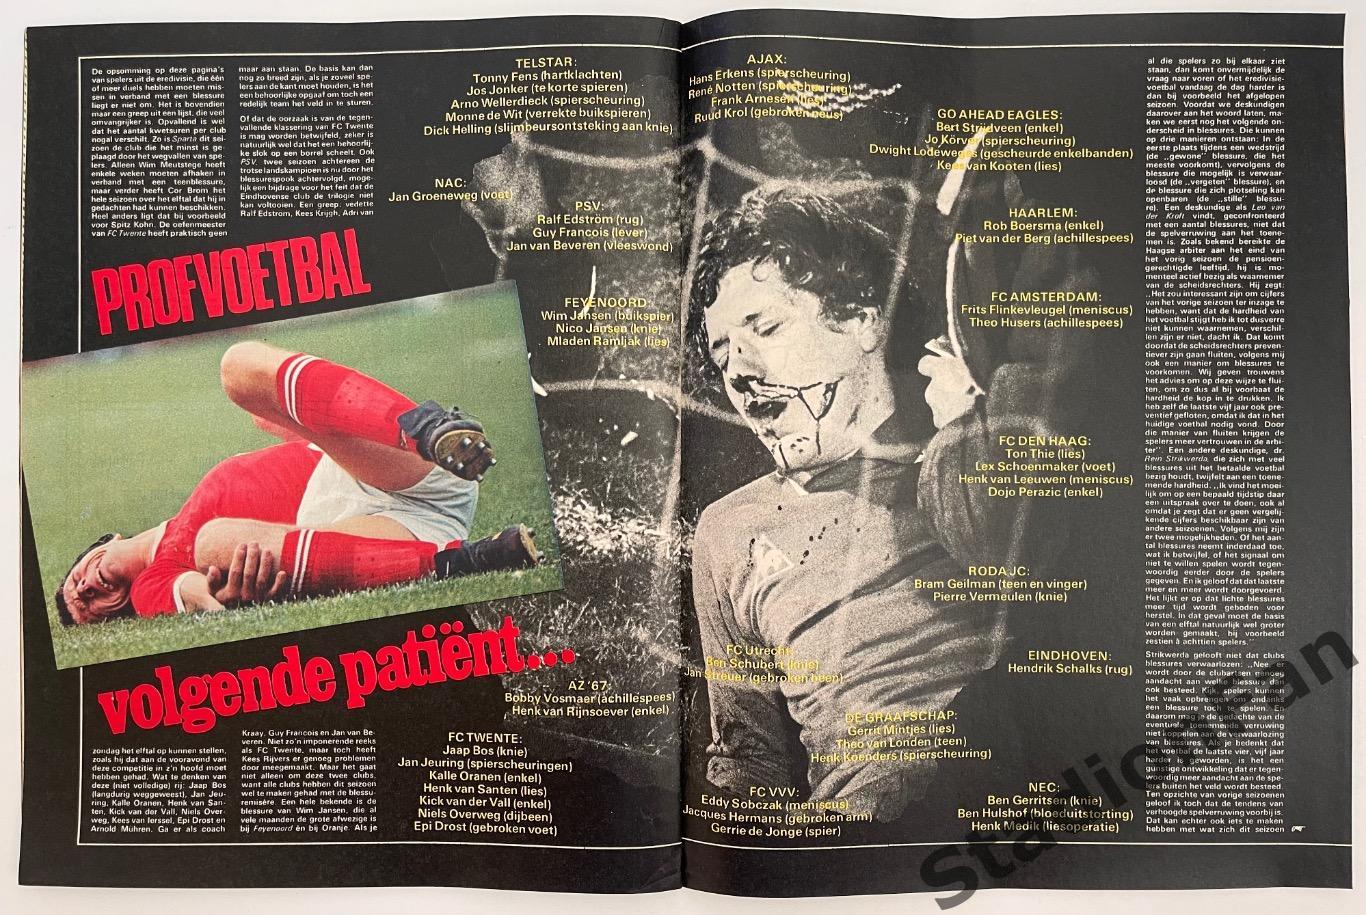 Журнал Voetbal nr.14 - 1977 год. 4